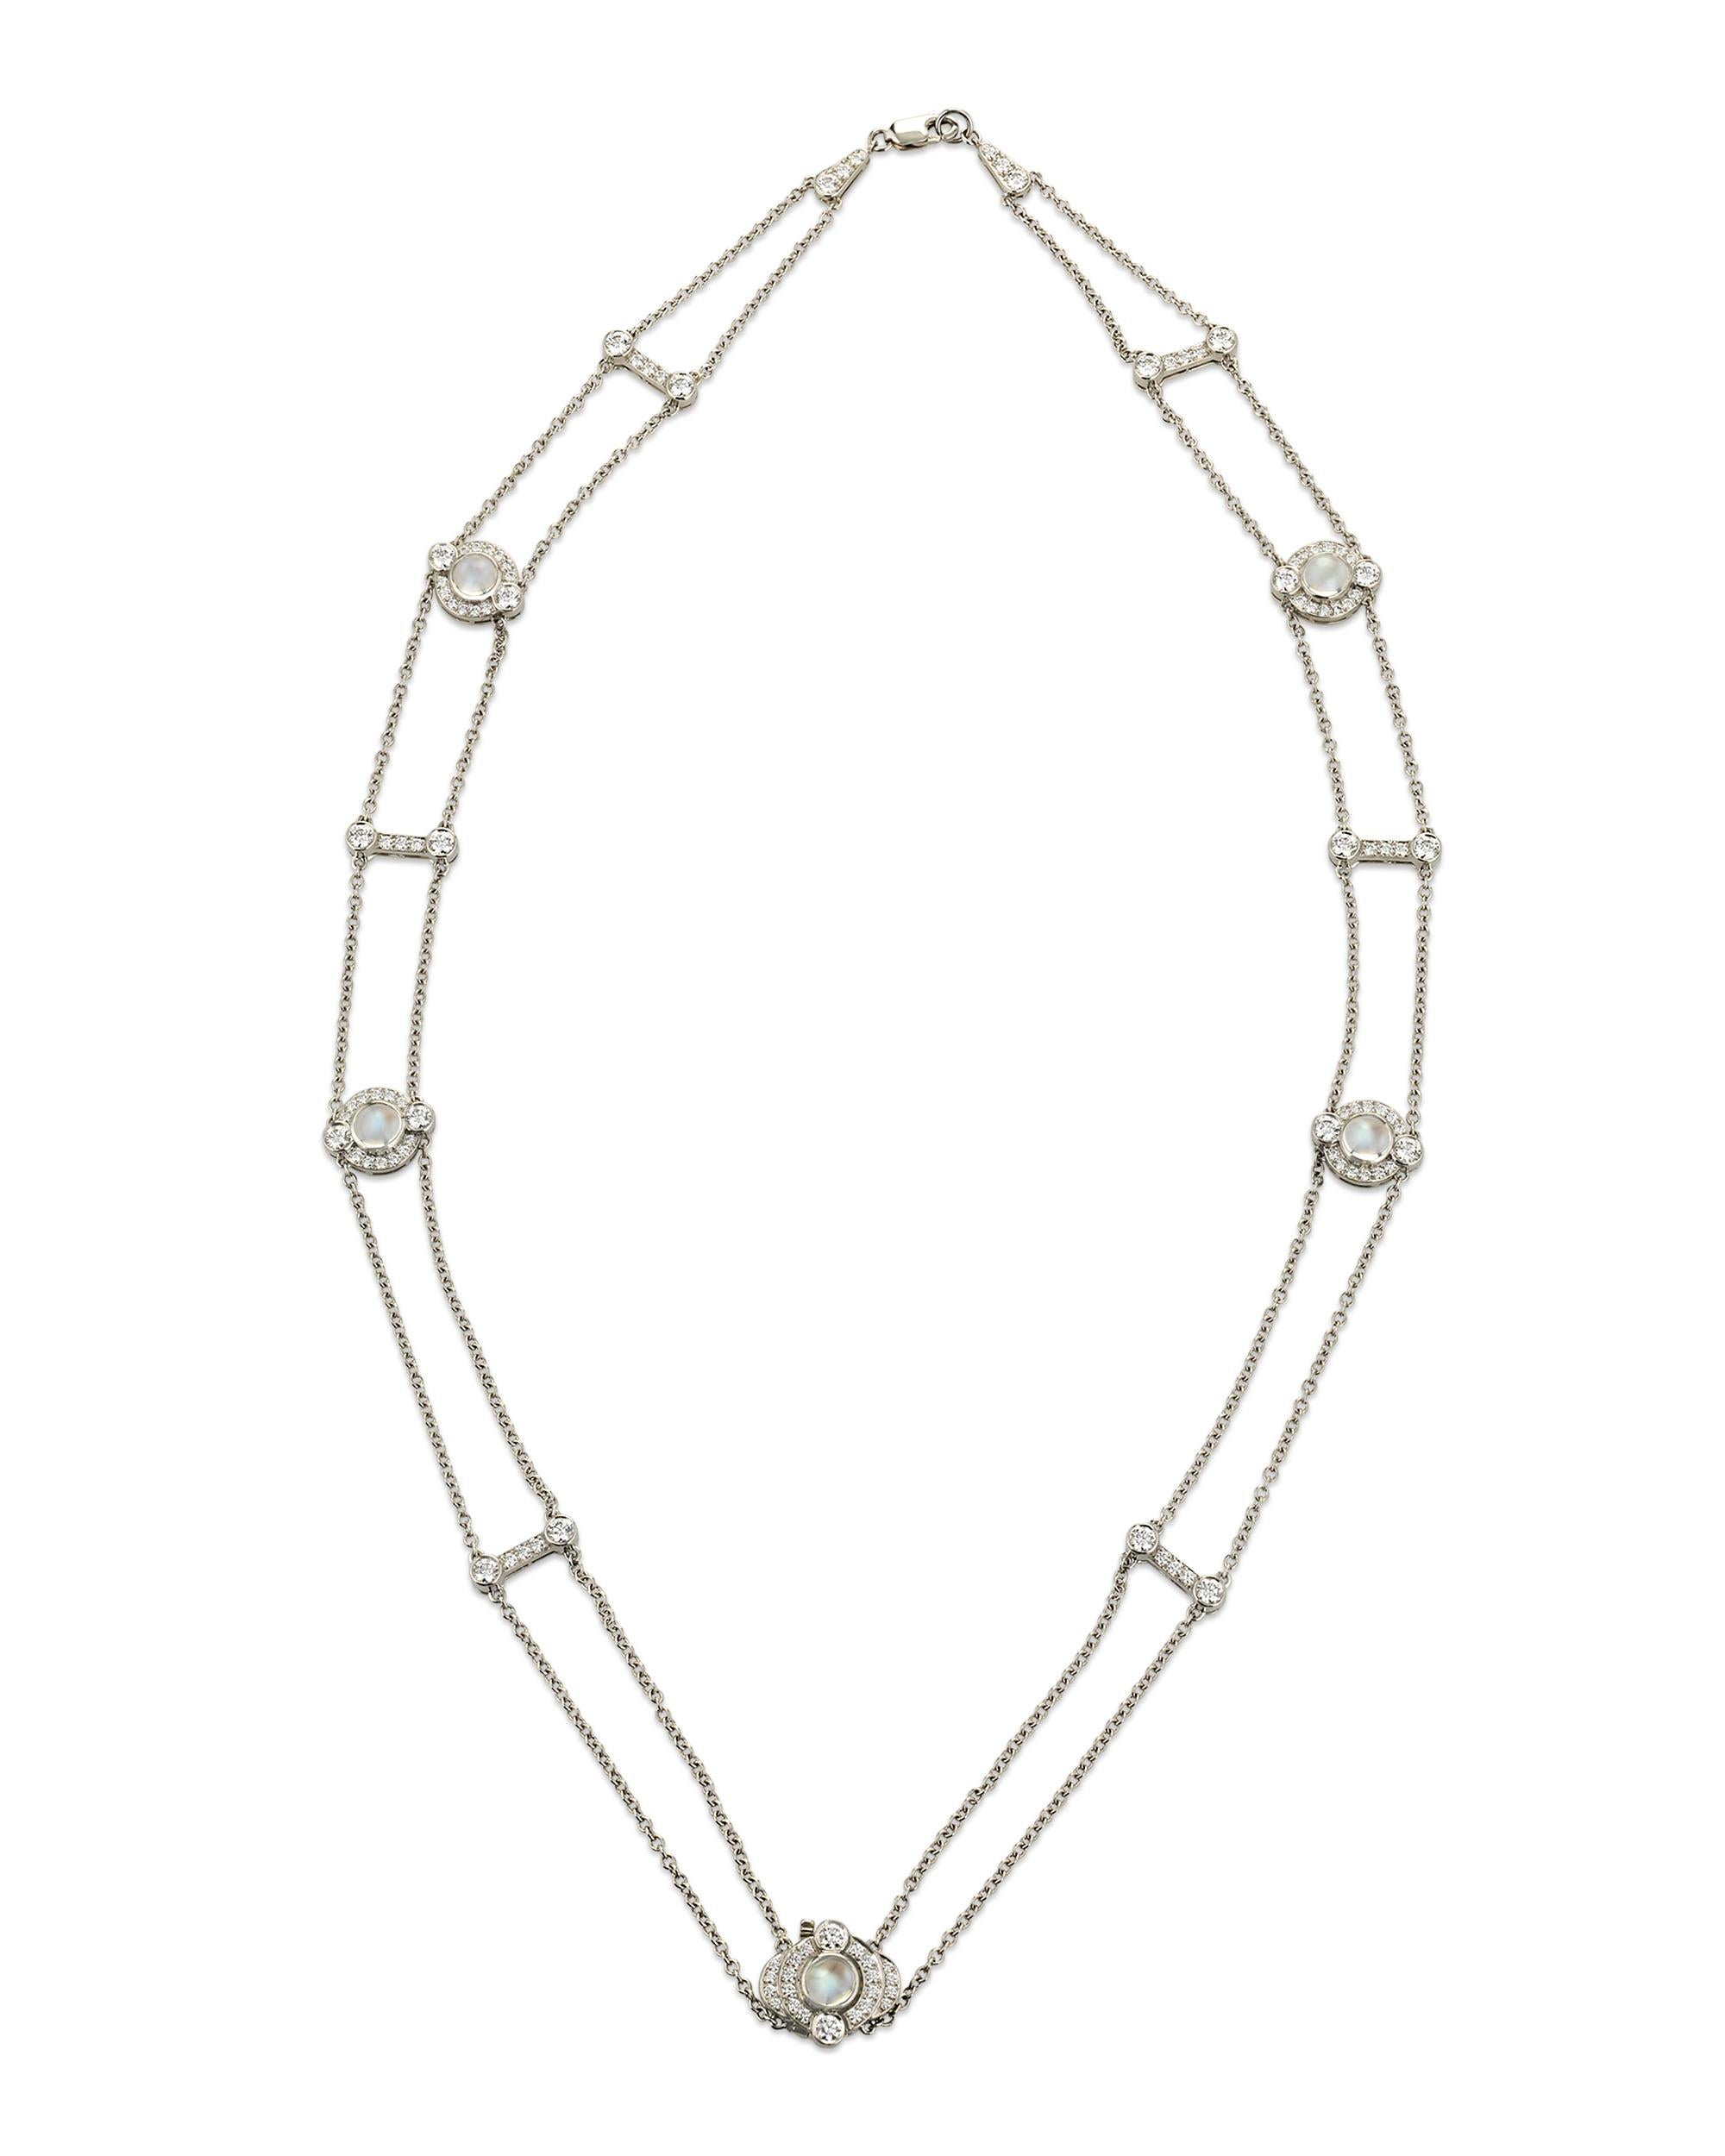 Fabriqué par le célèbre joaillier américain Tiffany & Co, ce collier à la fois discret et séduisant comporte des pendentifs sphériques en pierre de lune sertis en platine. D'éblouissants diamants blancs accentuent l'éclat iridescent des pierres de